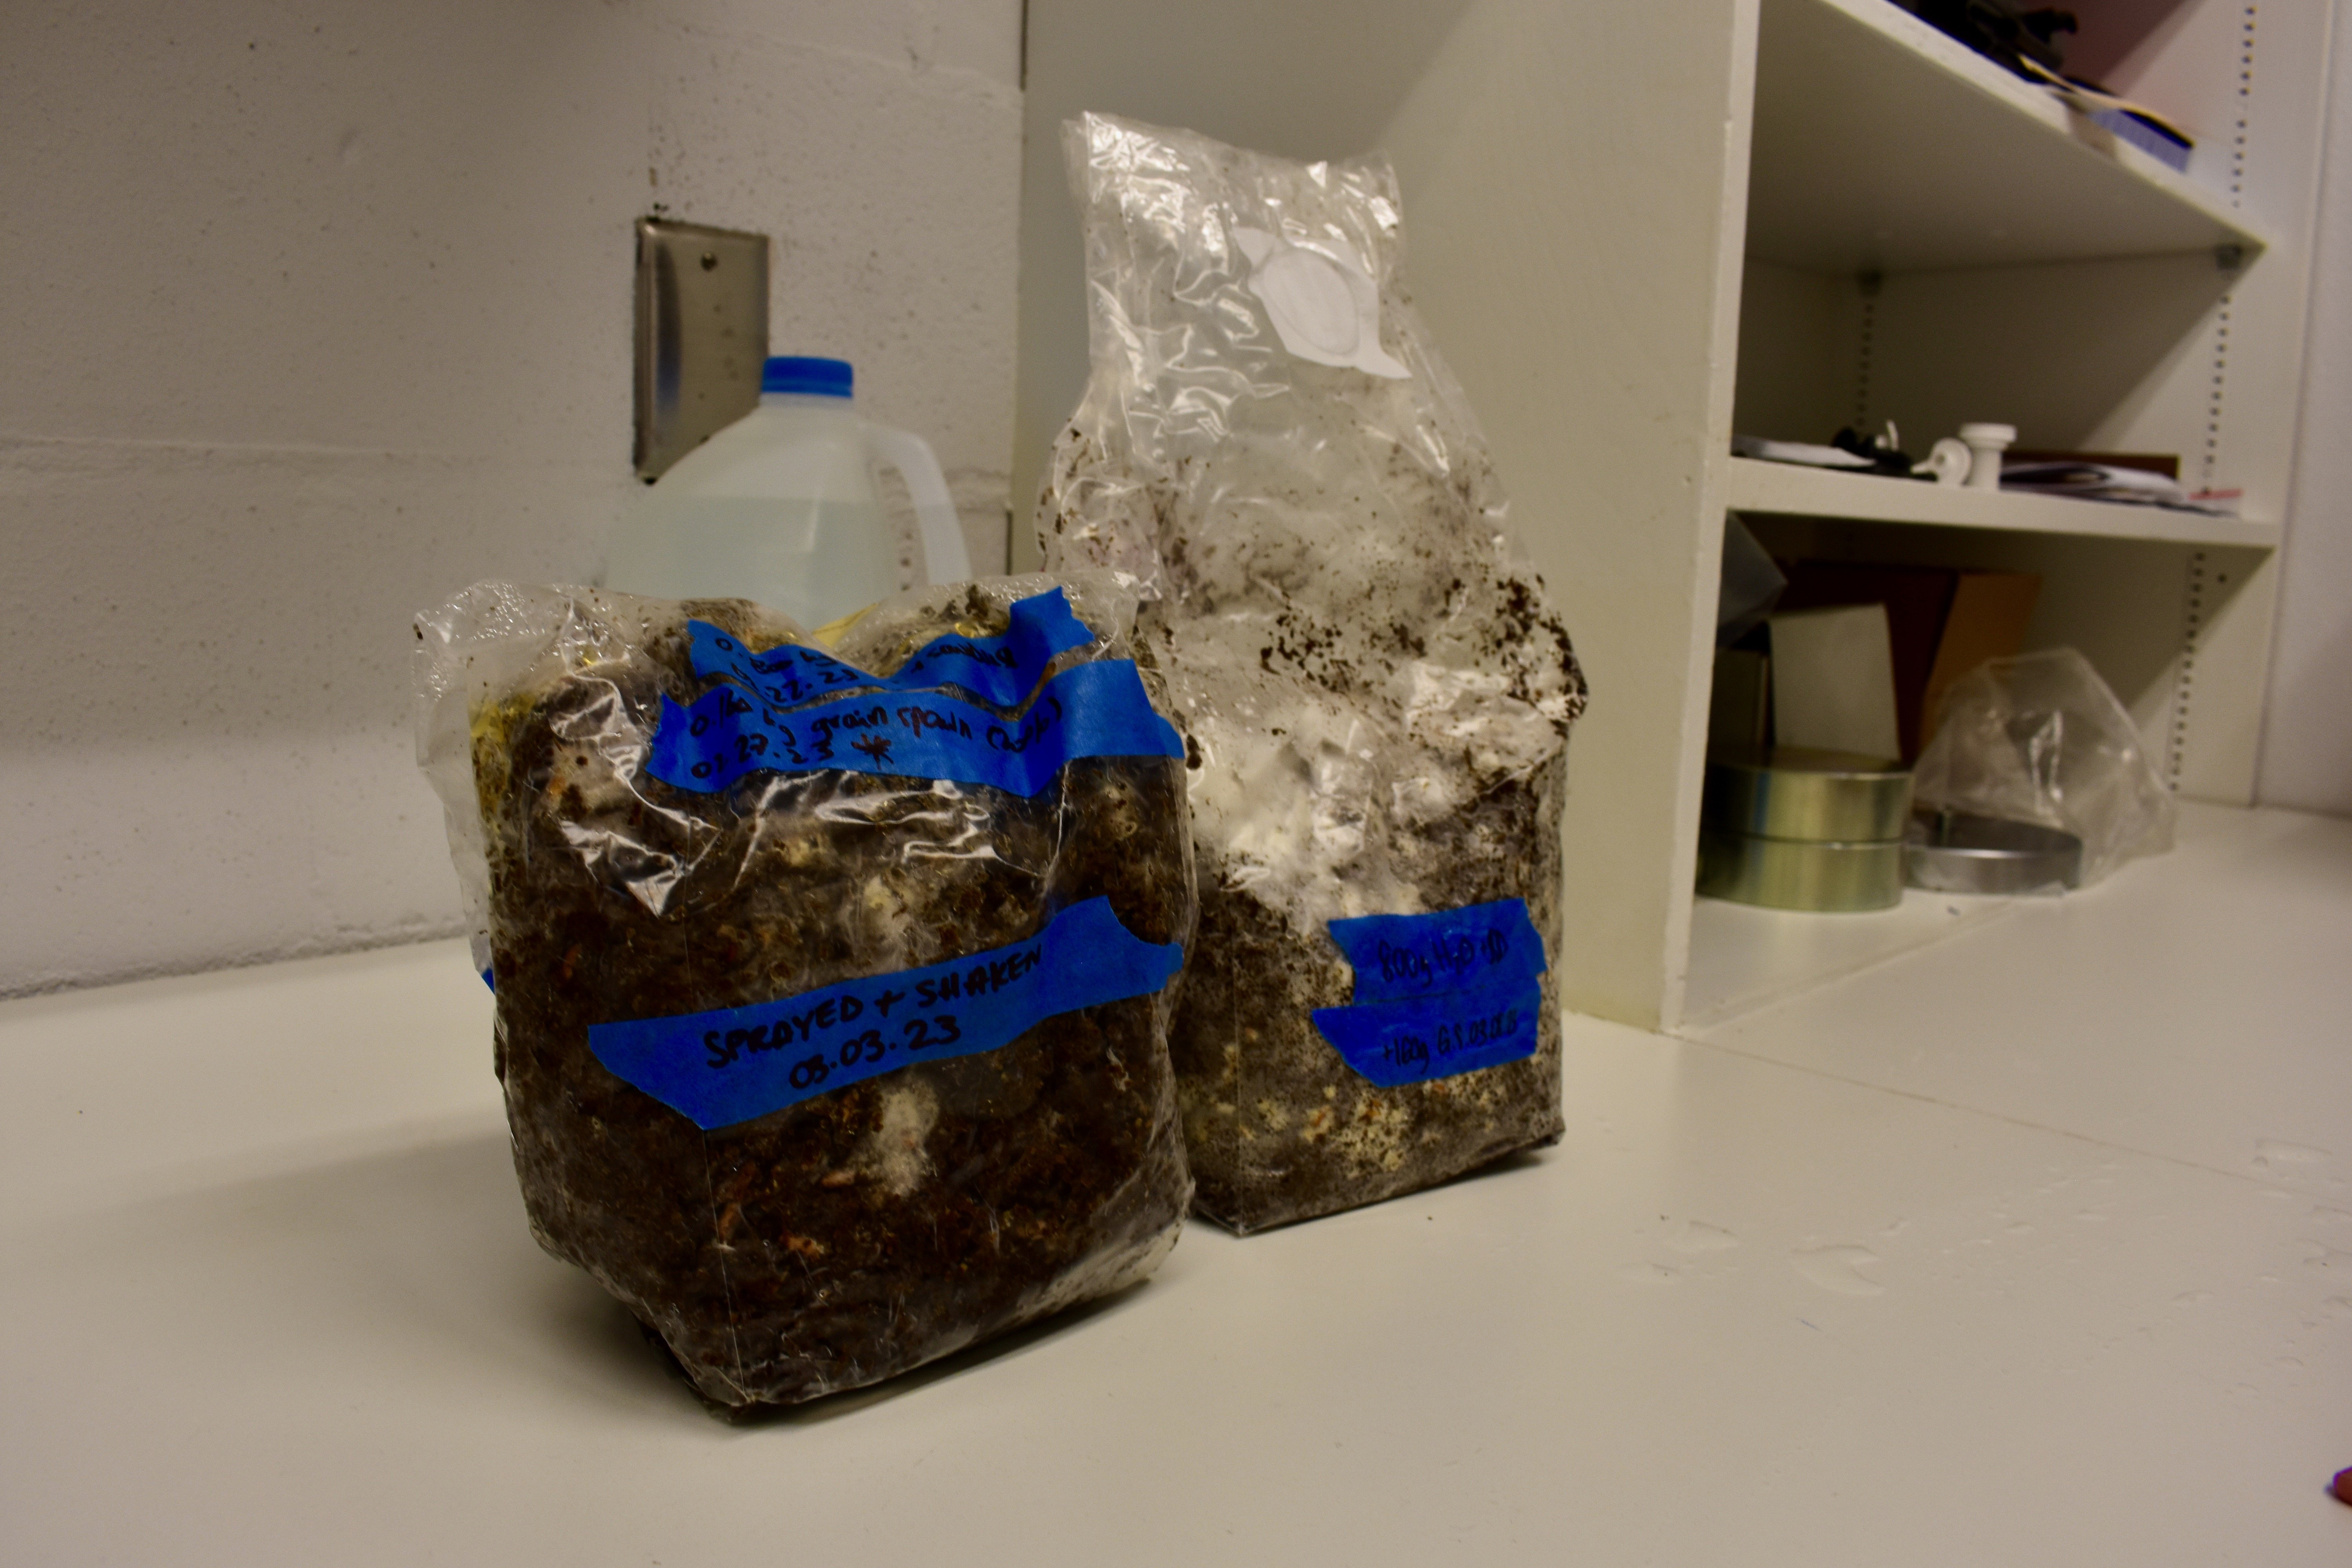 Mycelium growing in bags of sawdust.